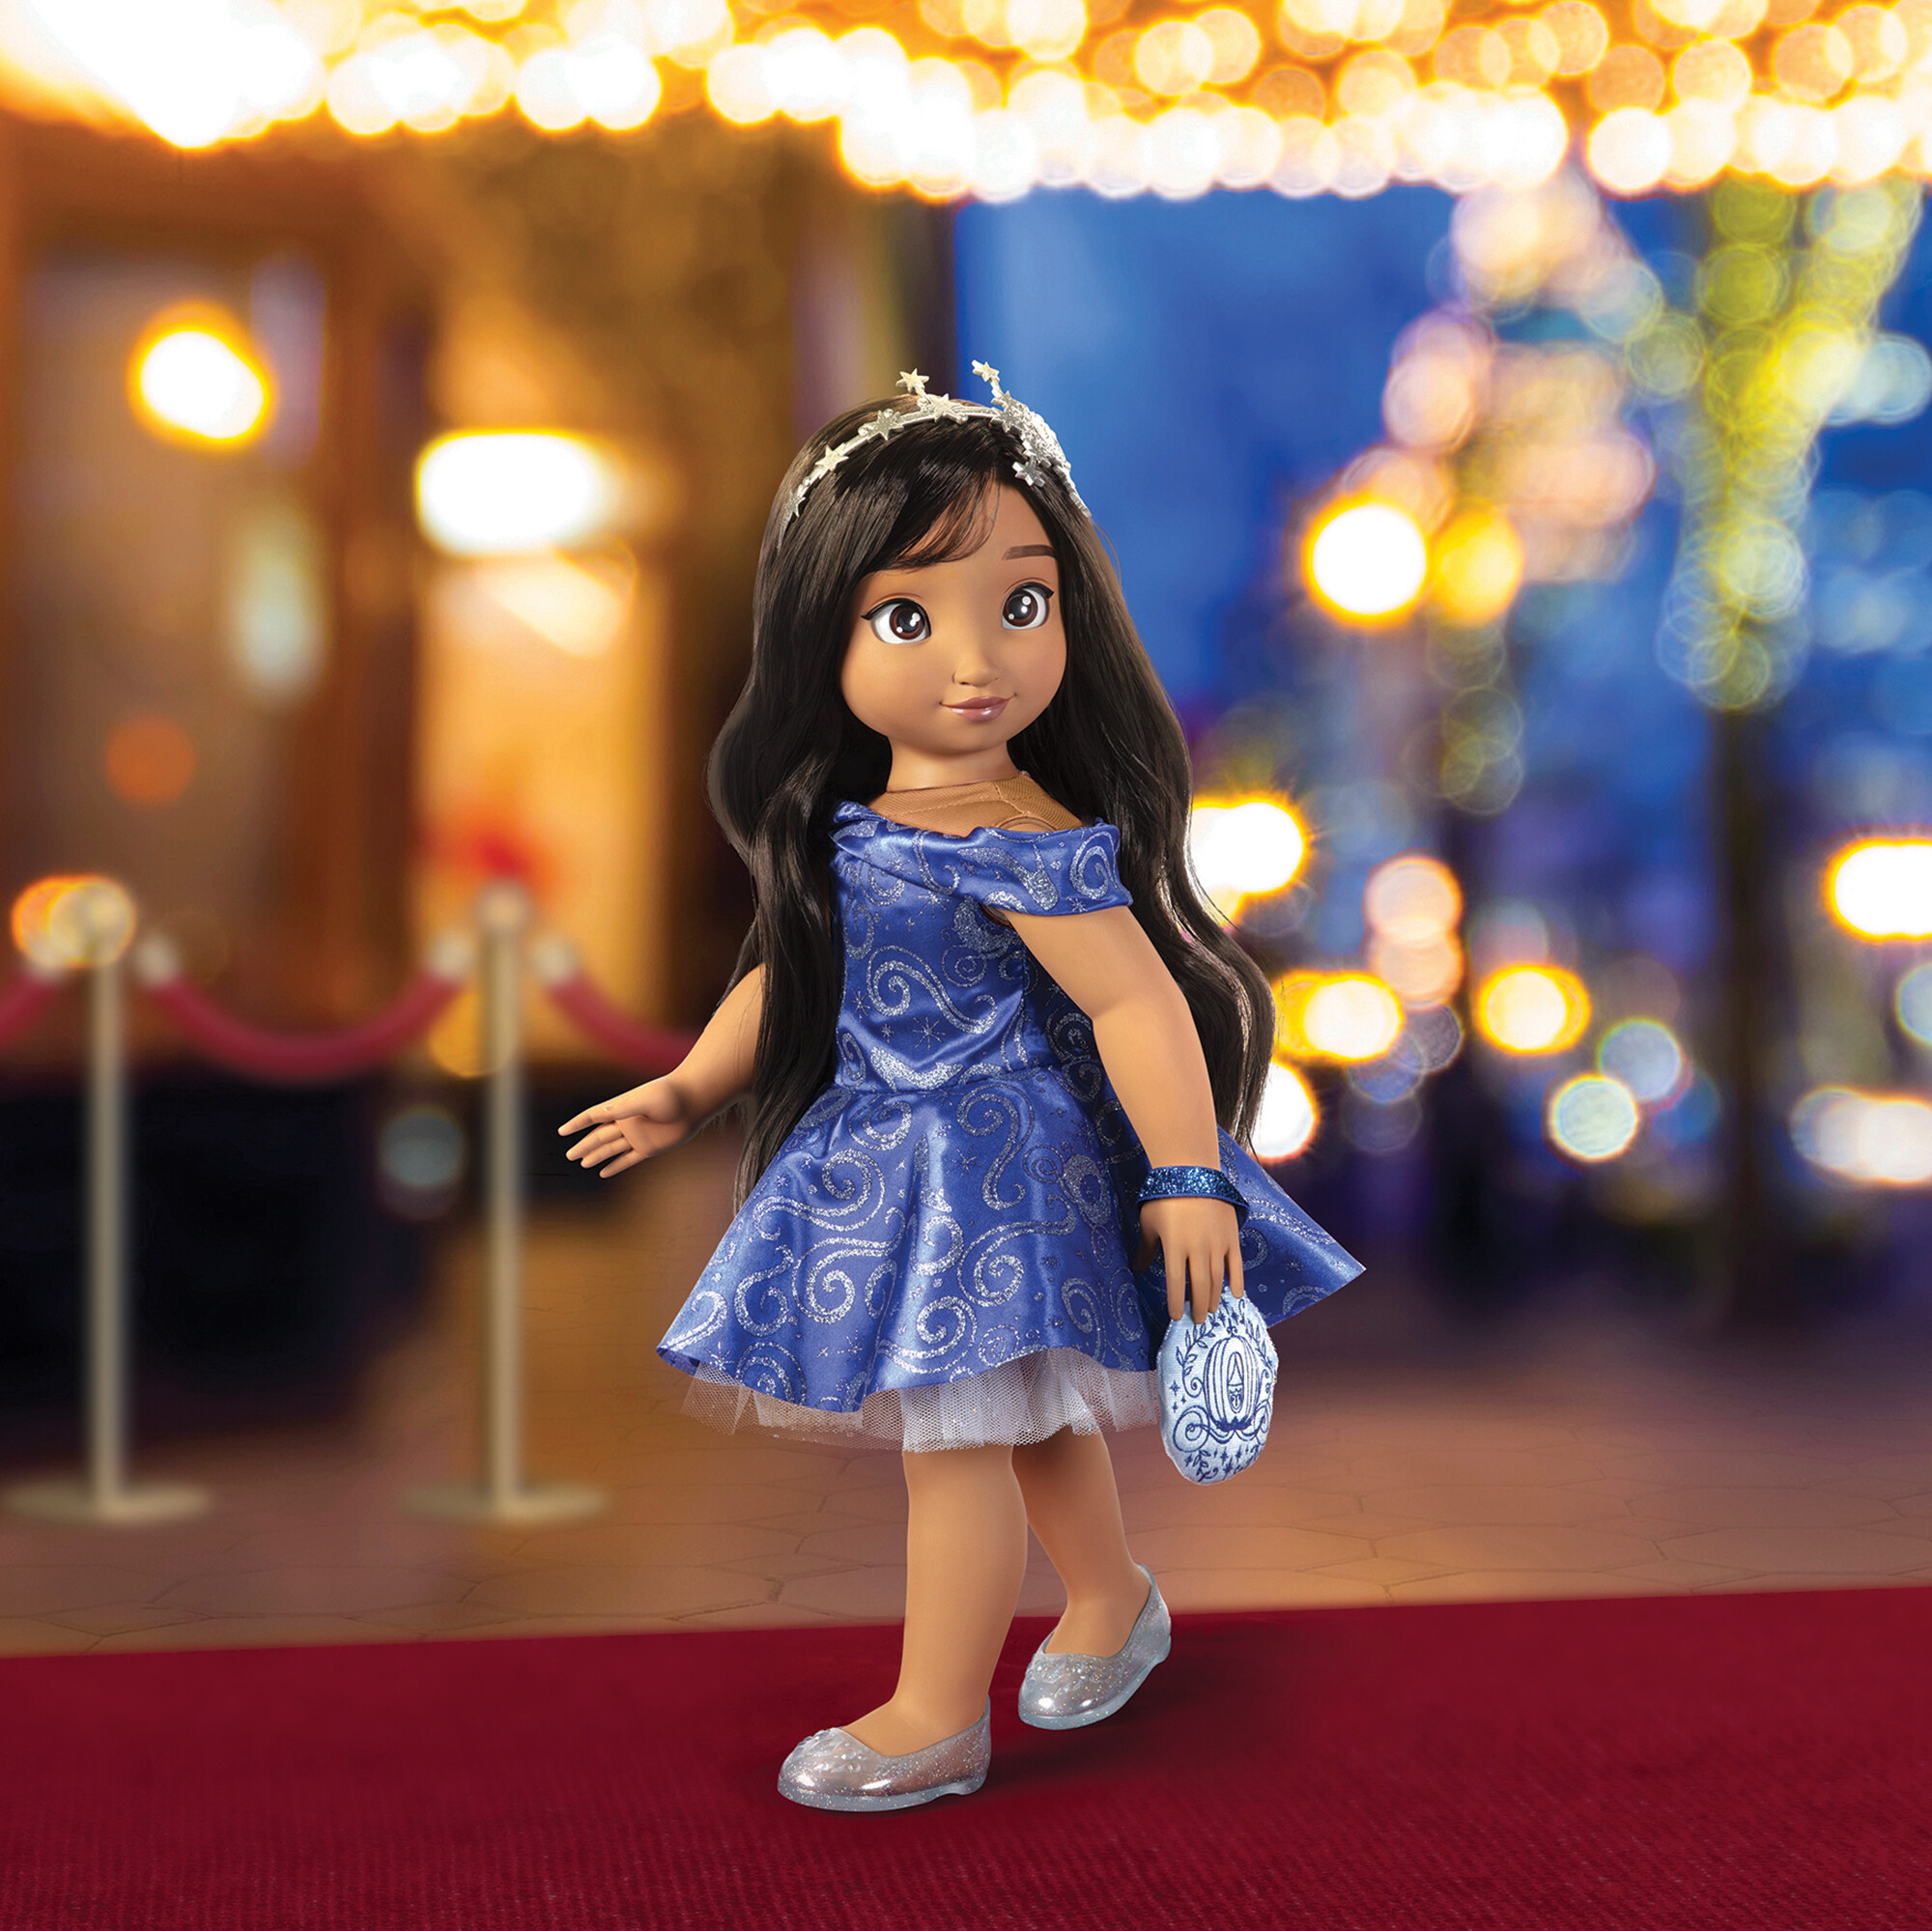 Disney ily 4ever bambola 46 cm ispirata ad ariel con capelli lunghi e accessori - DISNEY PRINCESS